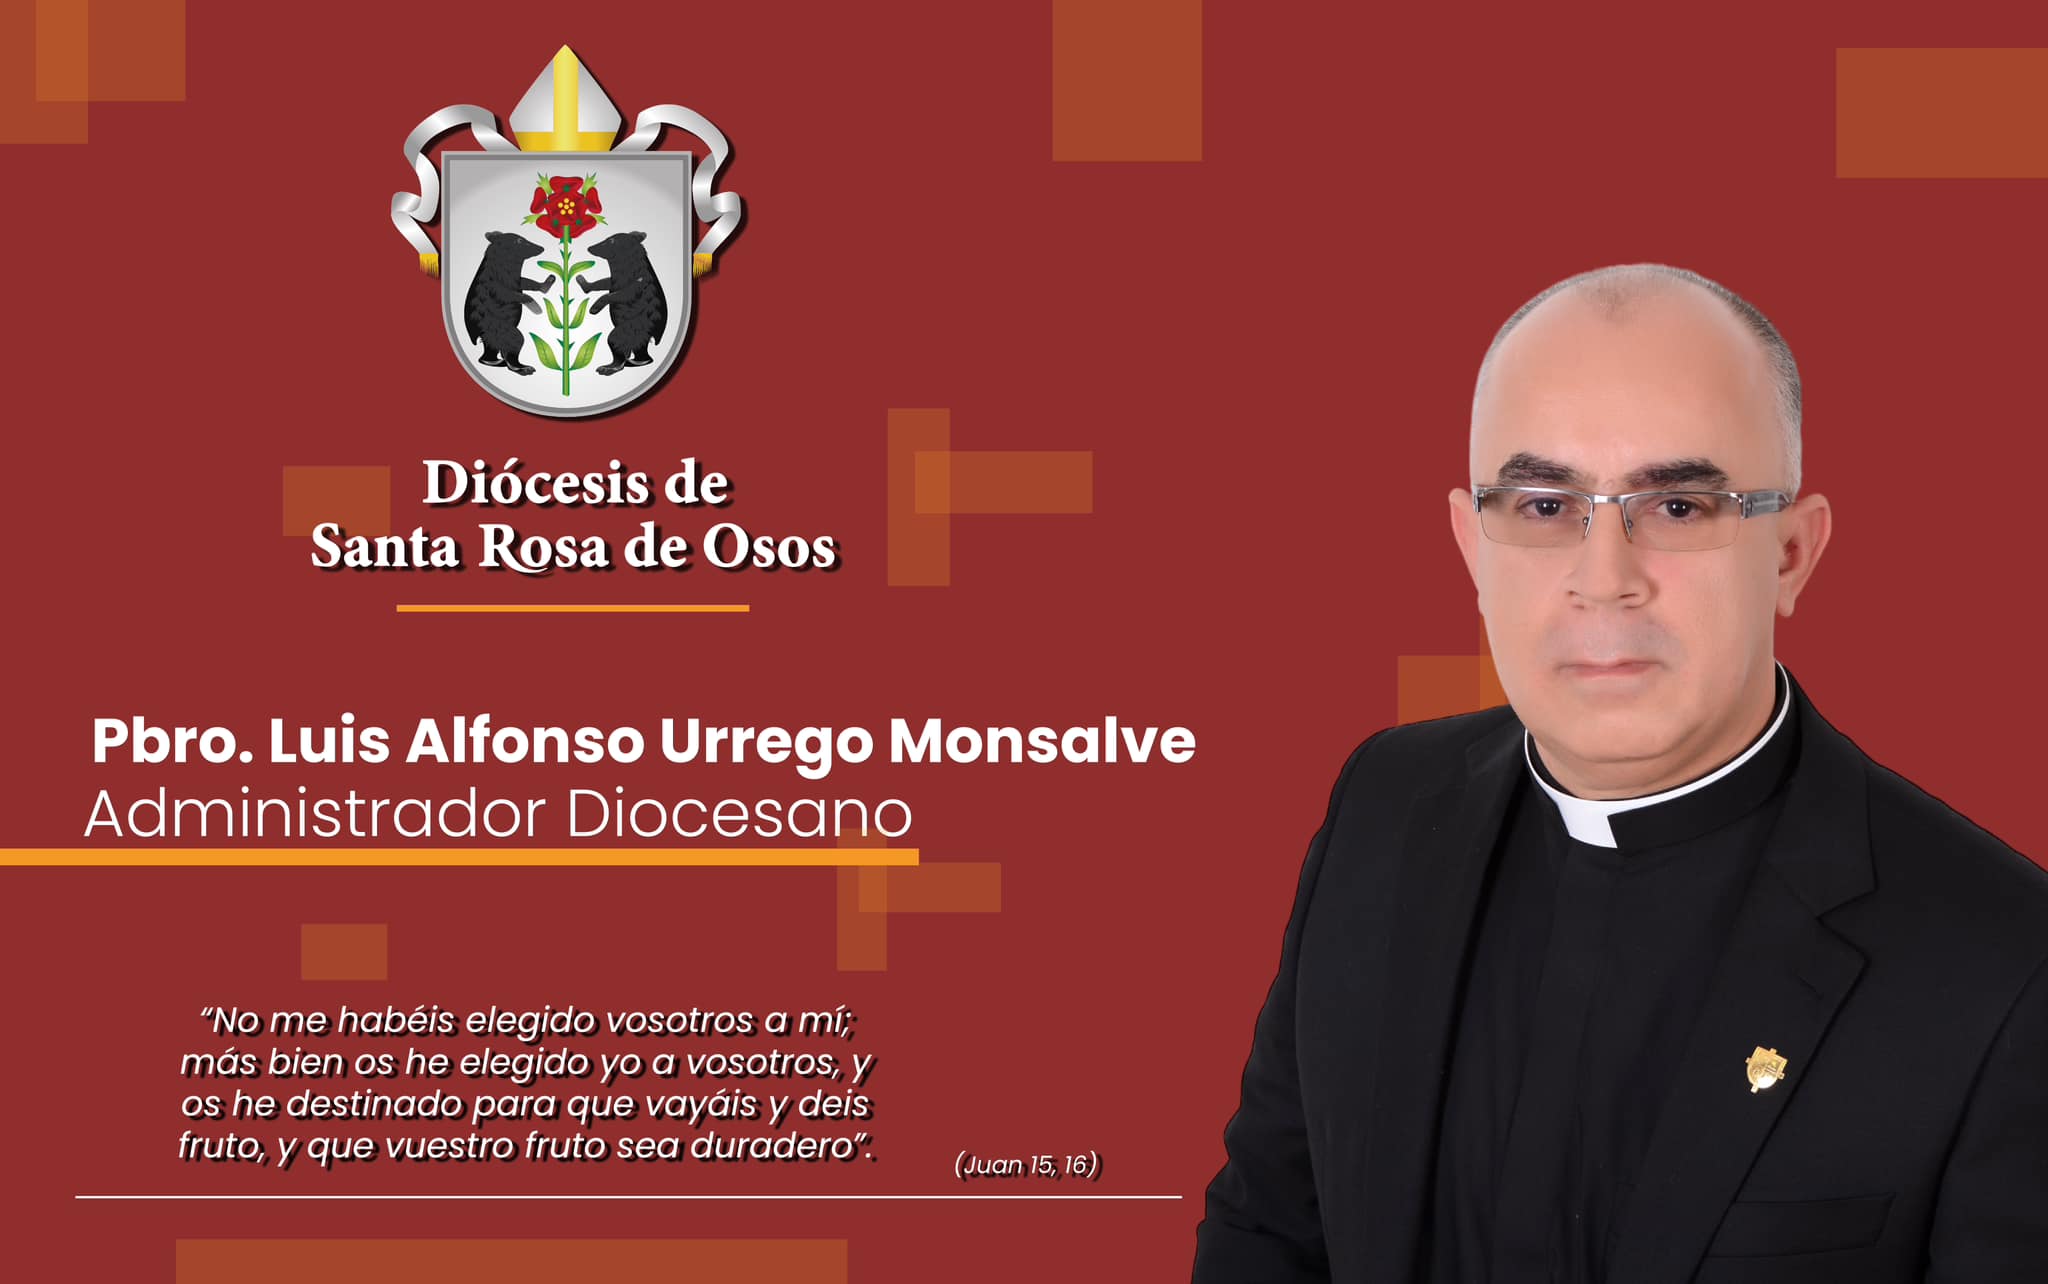 El Pbro. Luis Alfonso Urrego Monsalve ha sido elegido como administrador Diocesano.